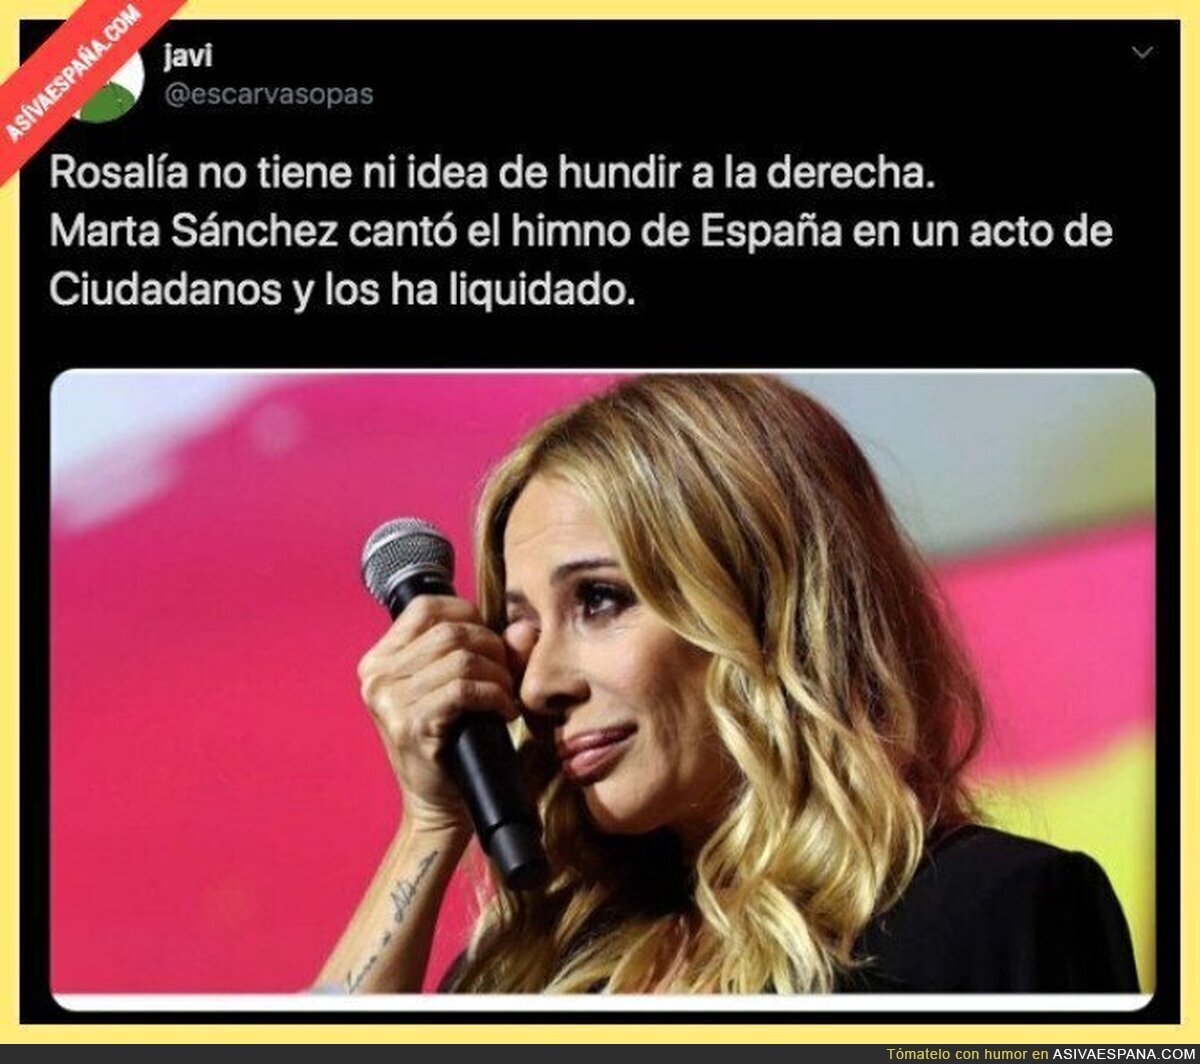 La gran heroína de la izquierda española